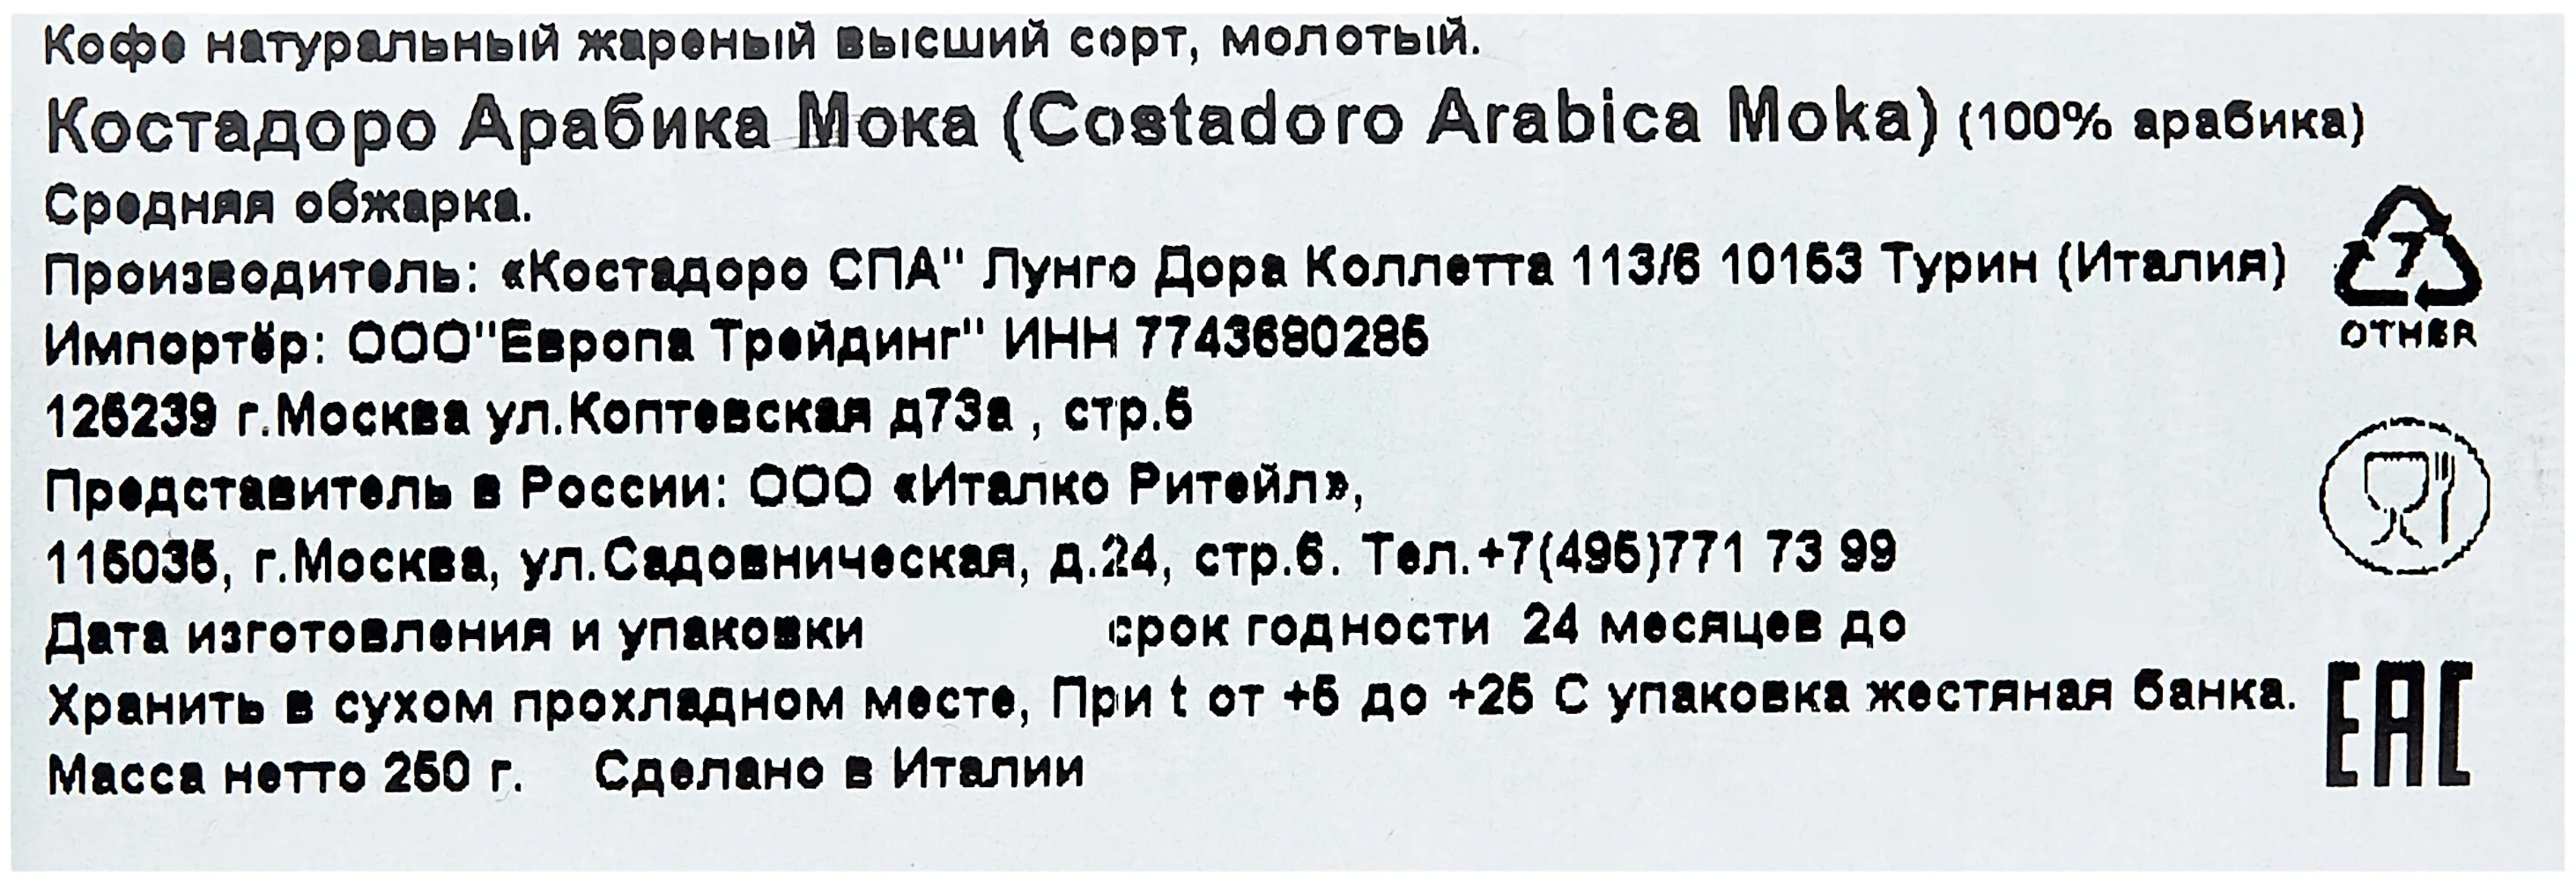 Costadoro Arabica Moka - упаковка: металлическая банка